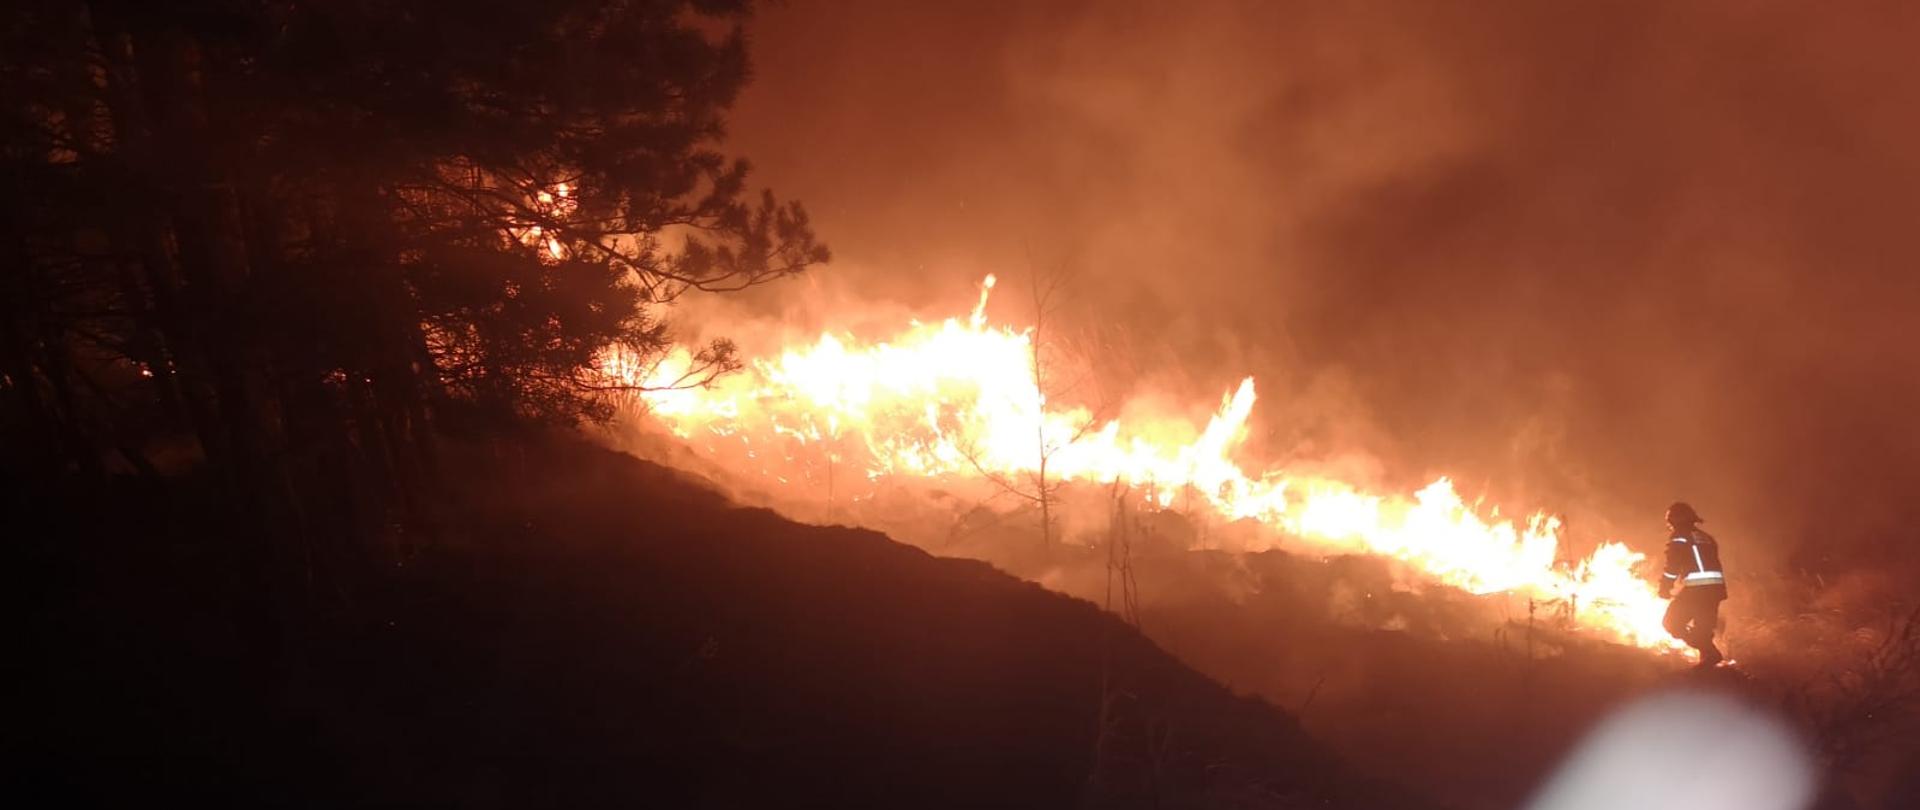 Na zdjęciu widać pożar traw w porze nocnej oraz strażaka, który przy pomocy tłumicy gasi ten pożar.